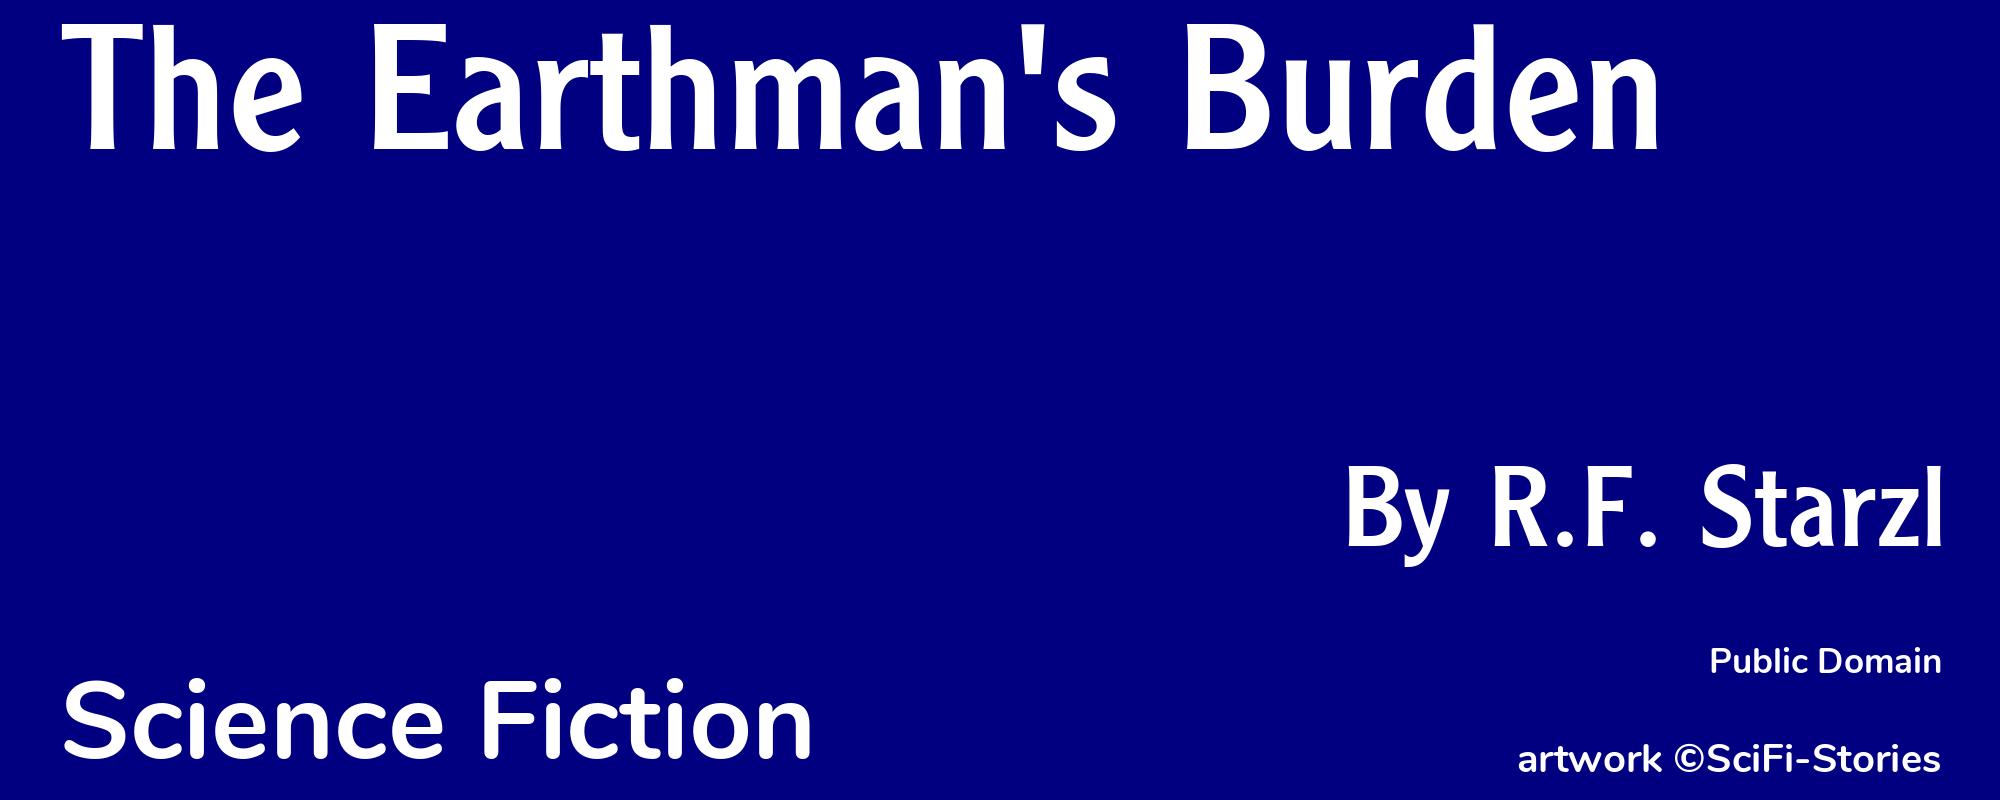 The Earthman's Burden - Cover